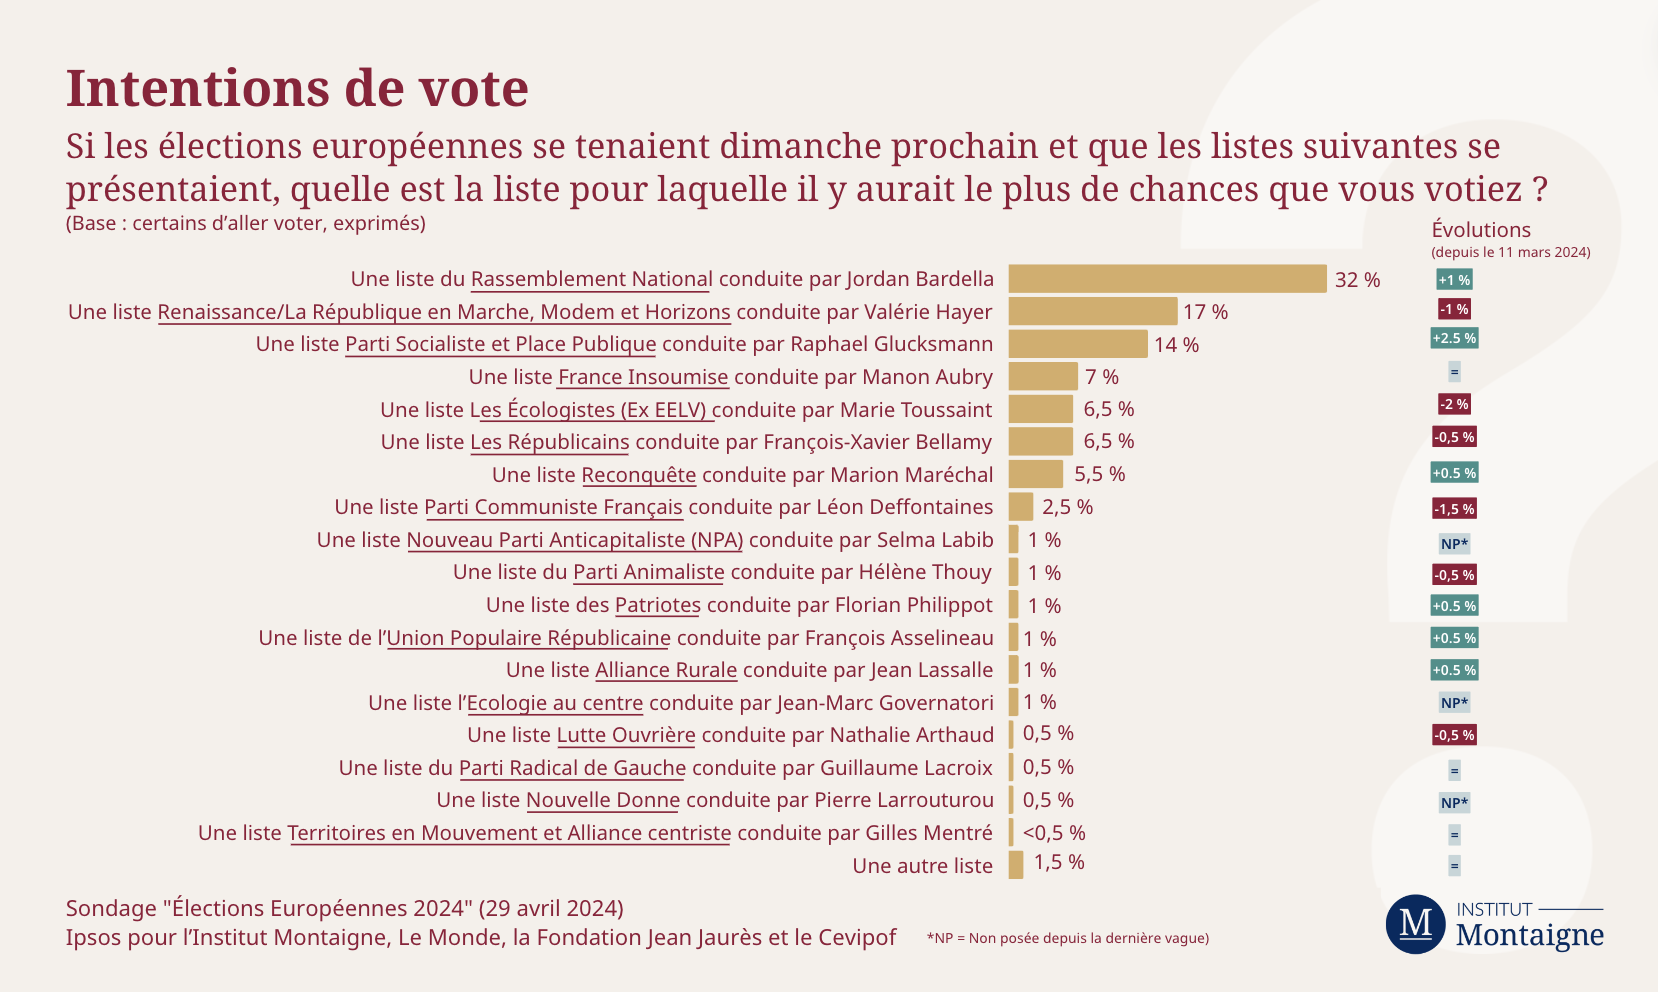 sondage-elections-europeennes-au-mitan-dune-campagne-le-mid-term-dun-mandat-graph-1